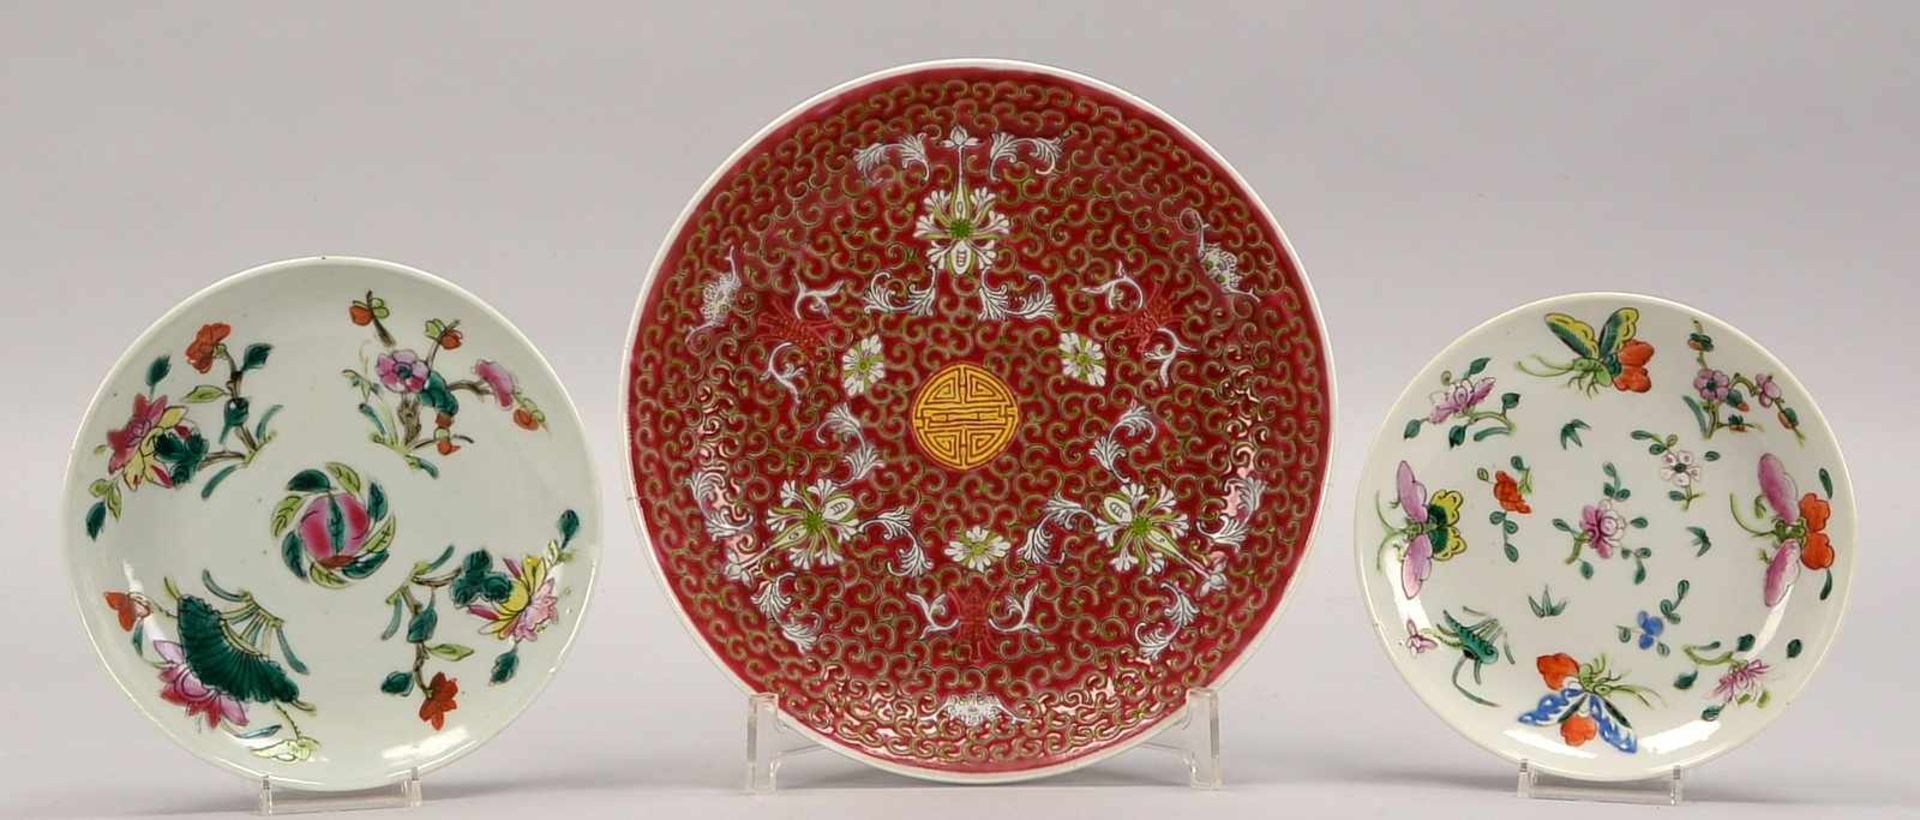 Kleines Teller-Lot, China, 3 Teile, jeweils im Boden gemarkt: 2x Teller/klein, mit floralen